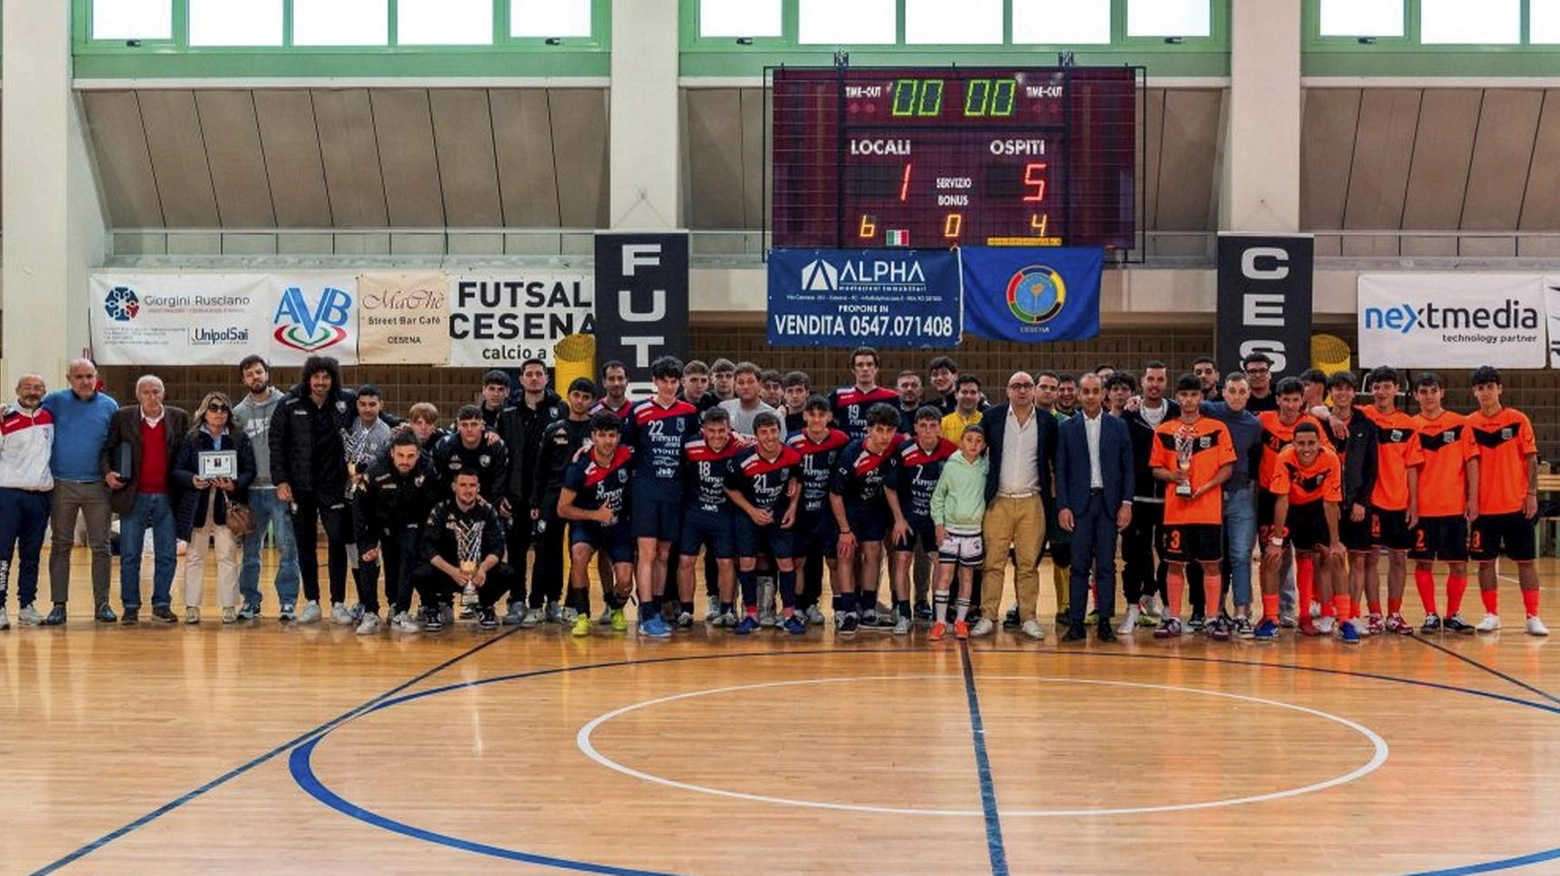 La squadra cesenate ha vinto la seconda edizione del triangolare dedicato a uno dei punti di riferimento del Panathlon e del calcio a cinque.